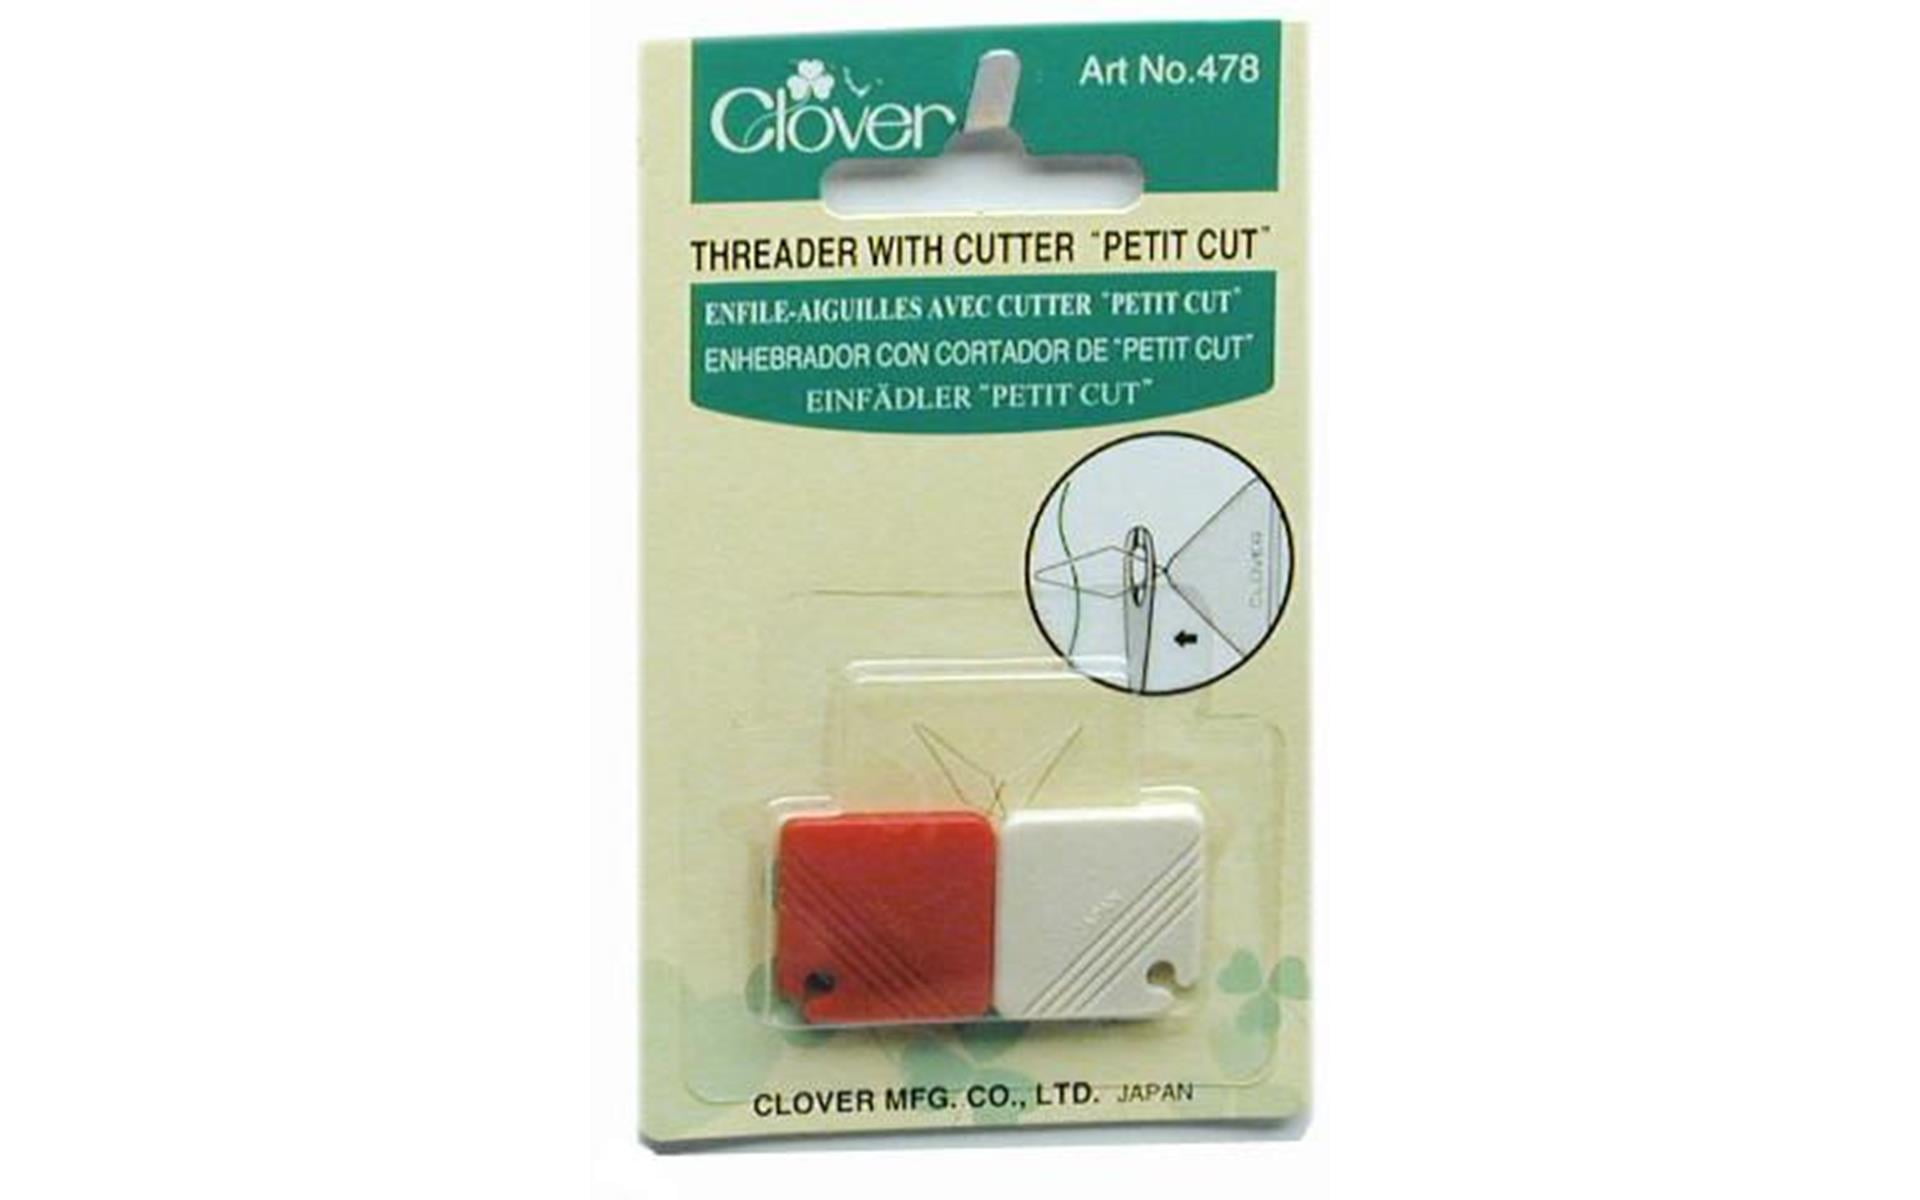 Clover Threader With Cutter Petit Cut Part No 478